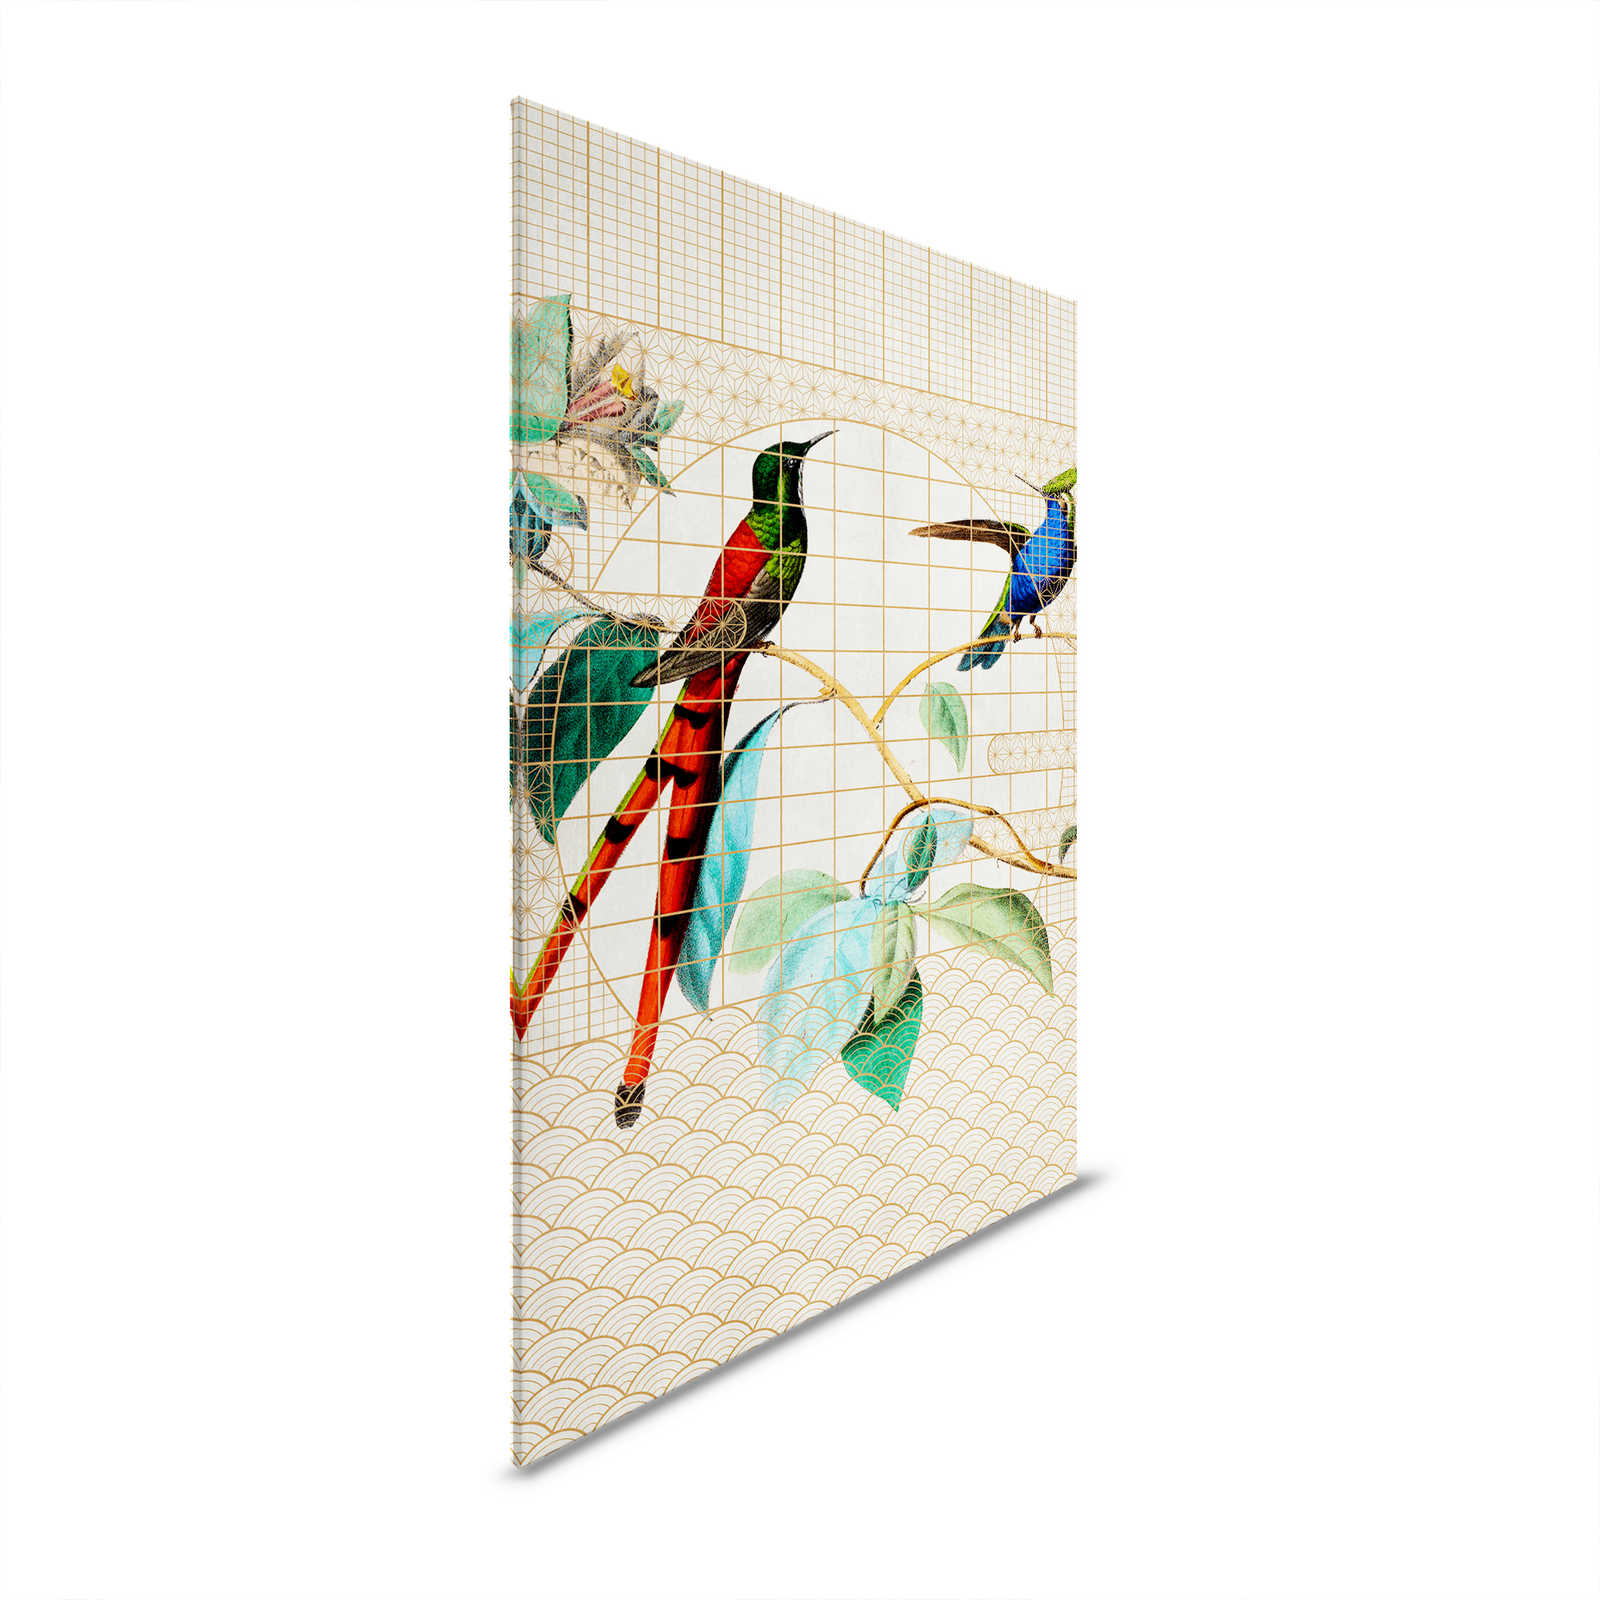 Volière 2 - Oiseaux toile oiseaux chanteurs dans une cage dorée - 1,20 m x 0,80 m
